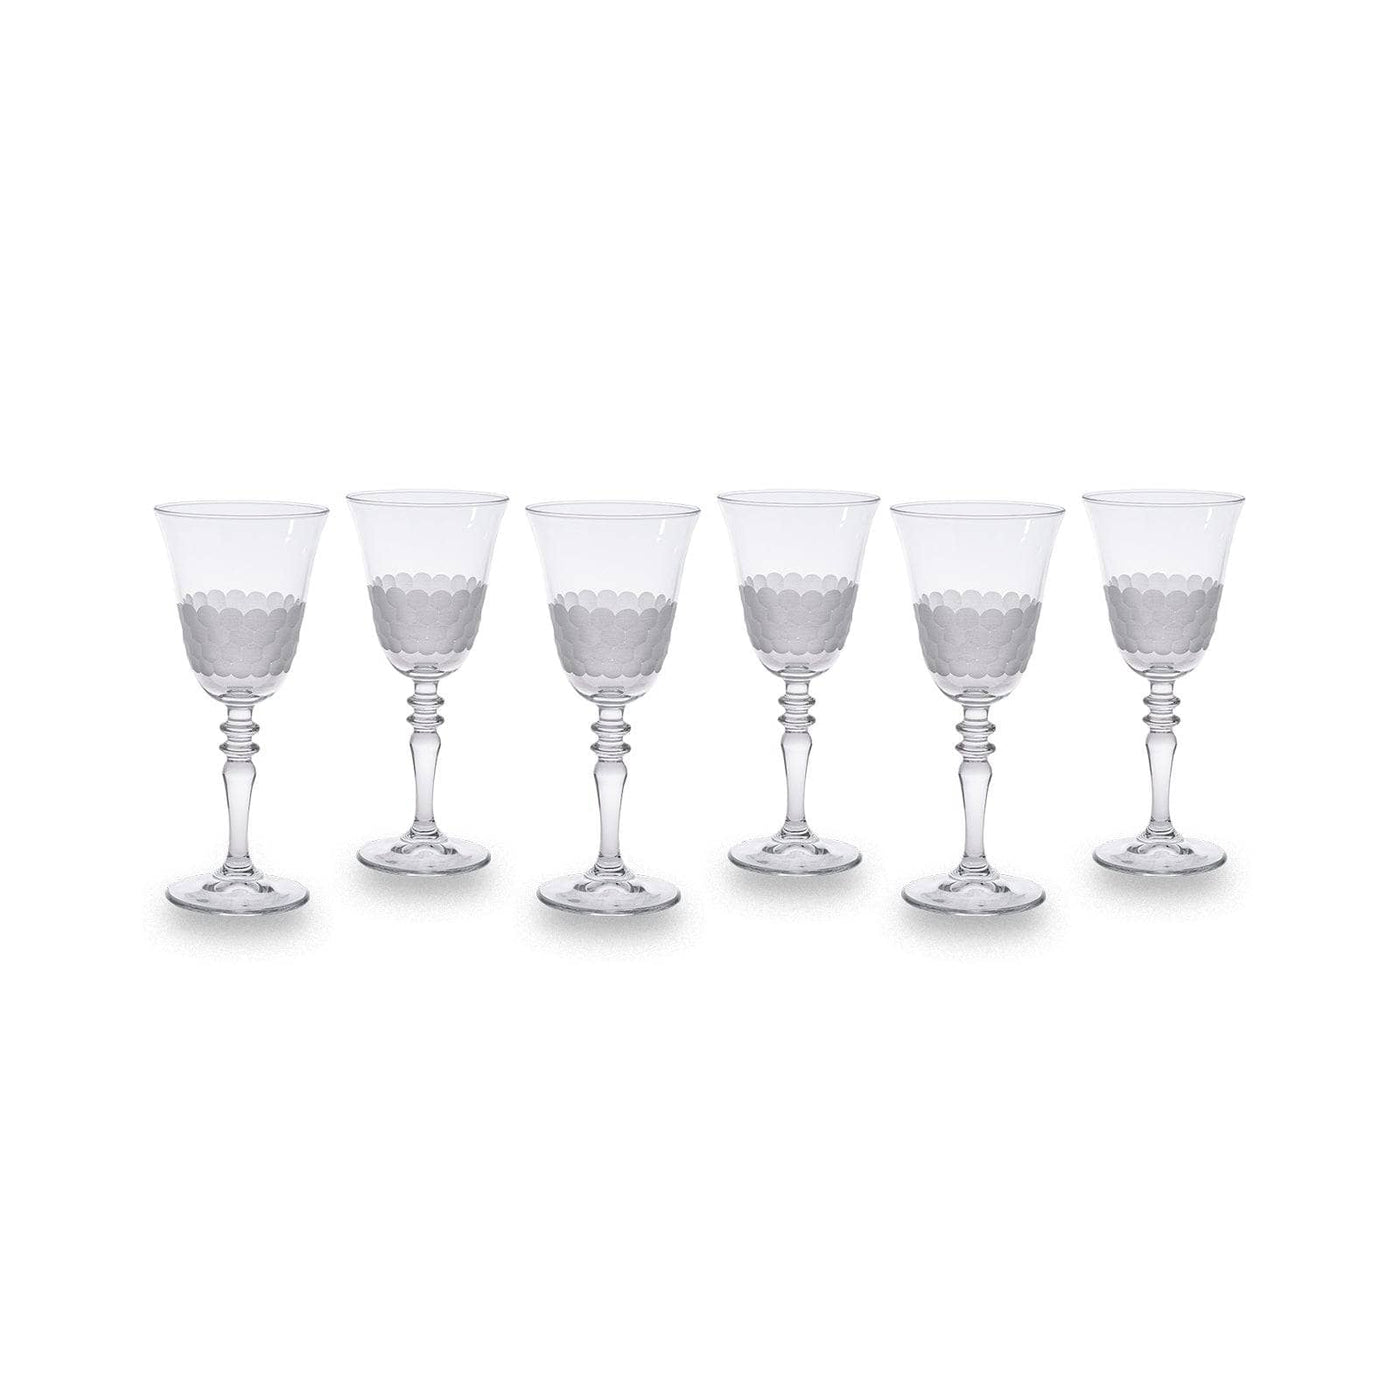 Bermondsey Set of 6 Wine Glasses, White, 270 ml Glasses & Tumblers sazy.com